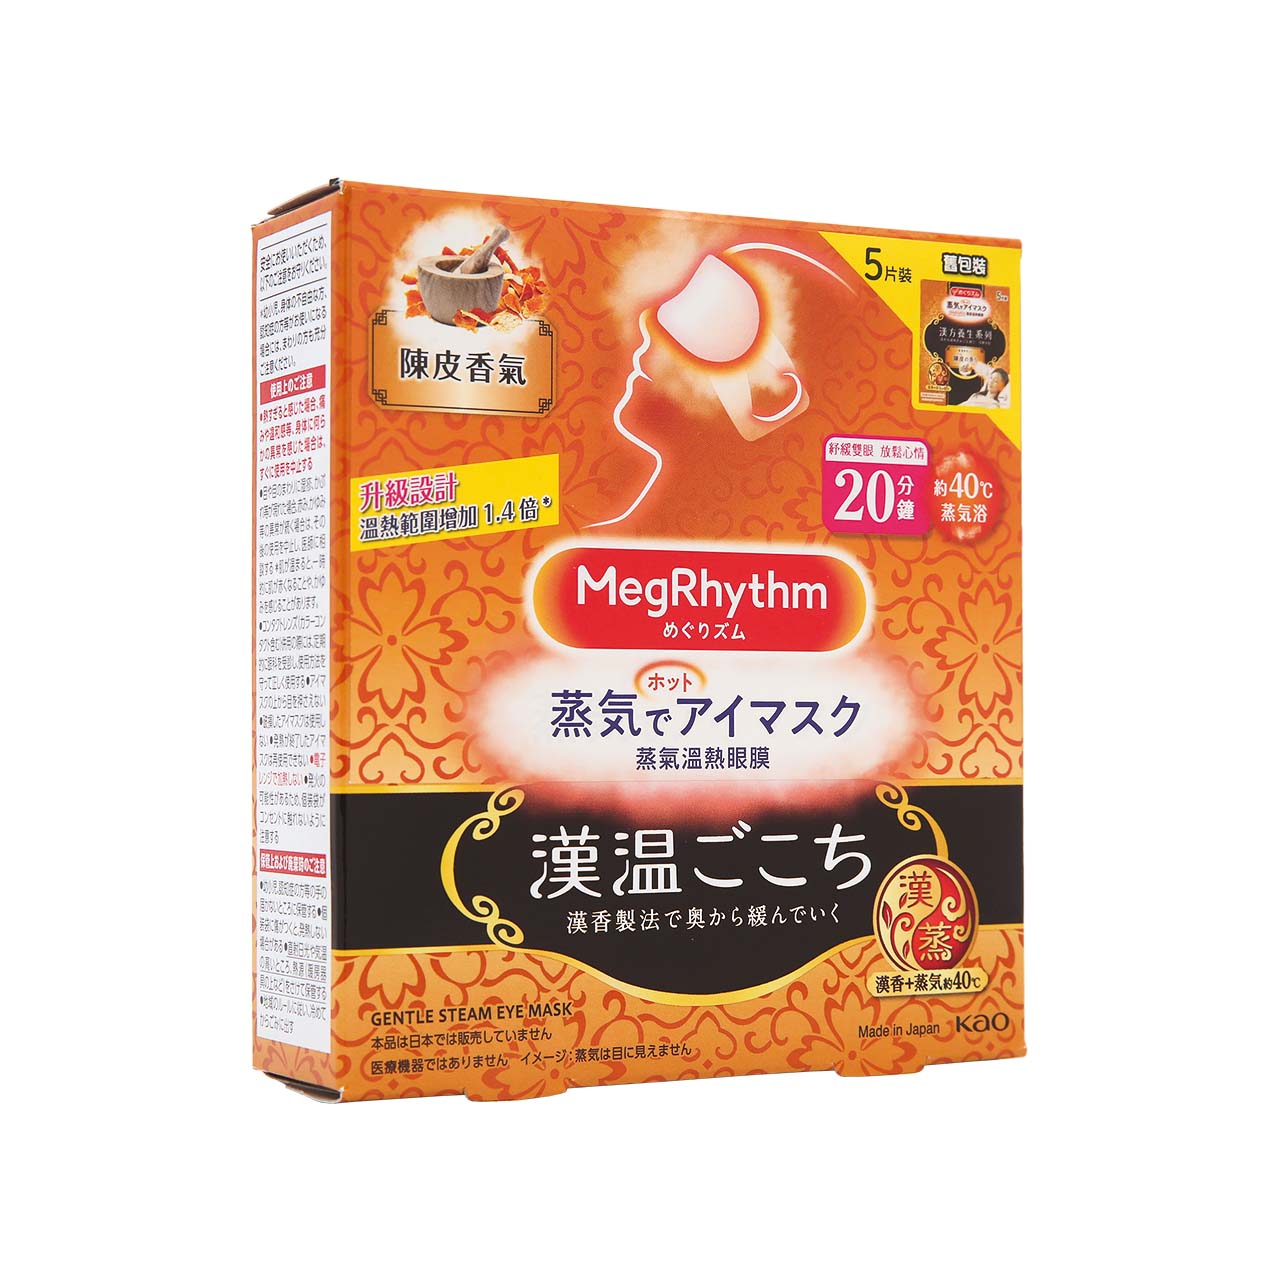 MegRhythm Steam Eye Mask Chen Pi 5pcs